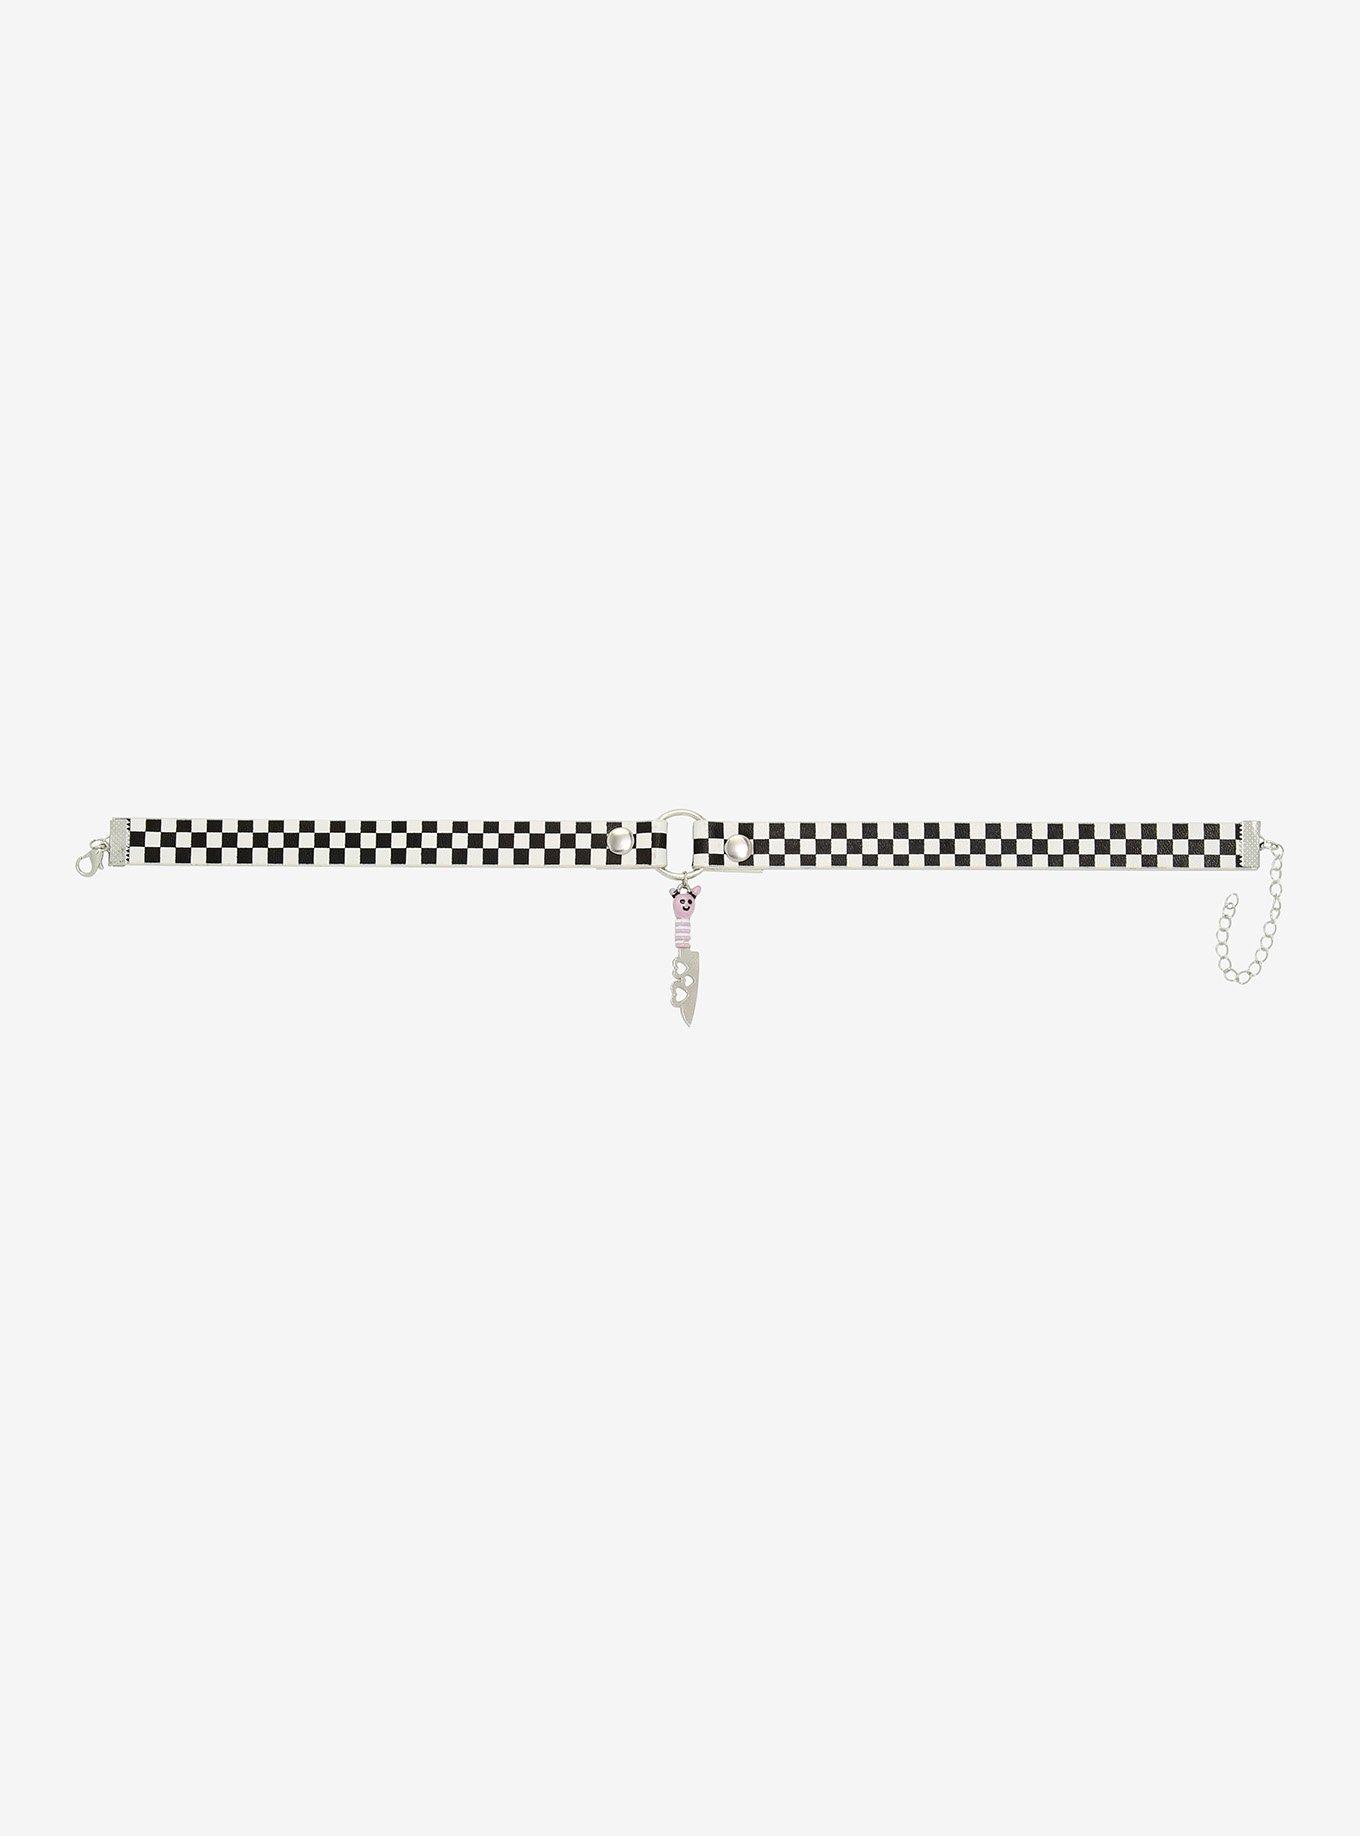 Black & White Checkered Heart Knife Pendant O-Ring Choker, , alternate